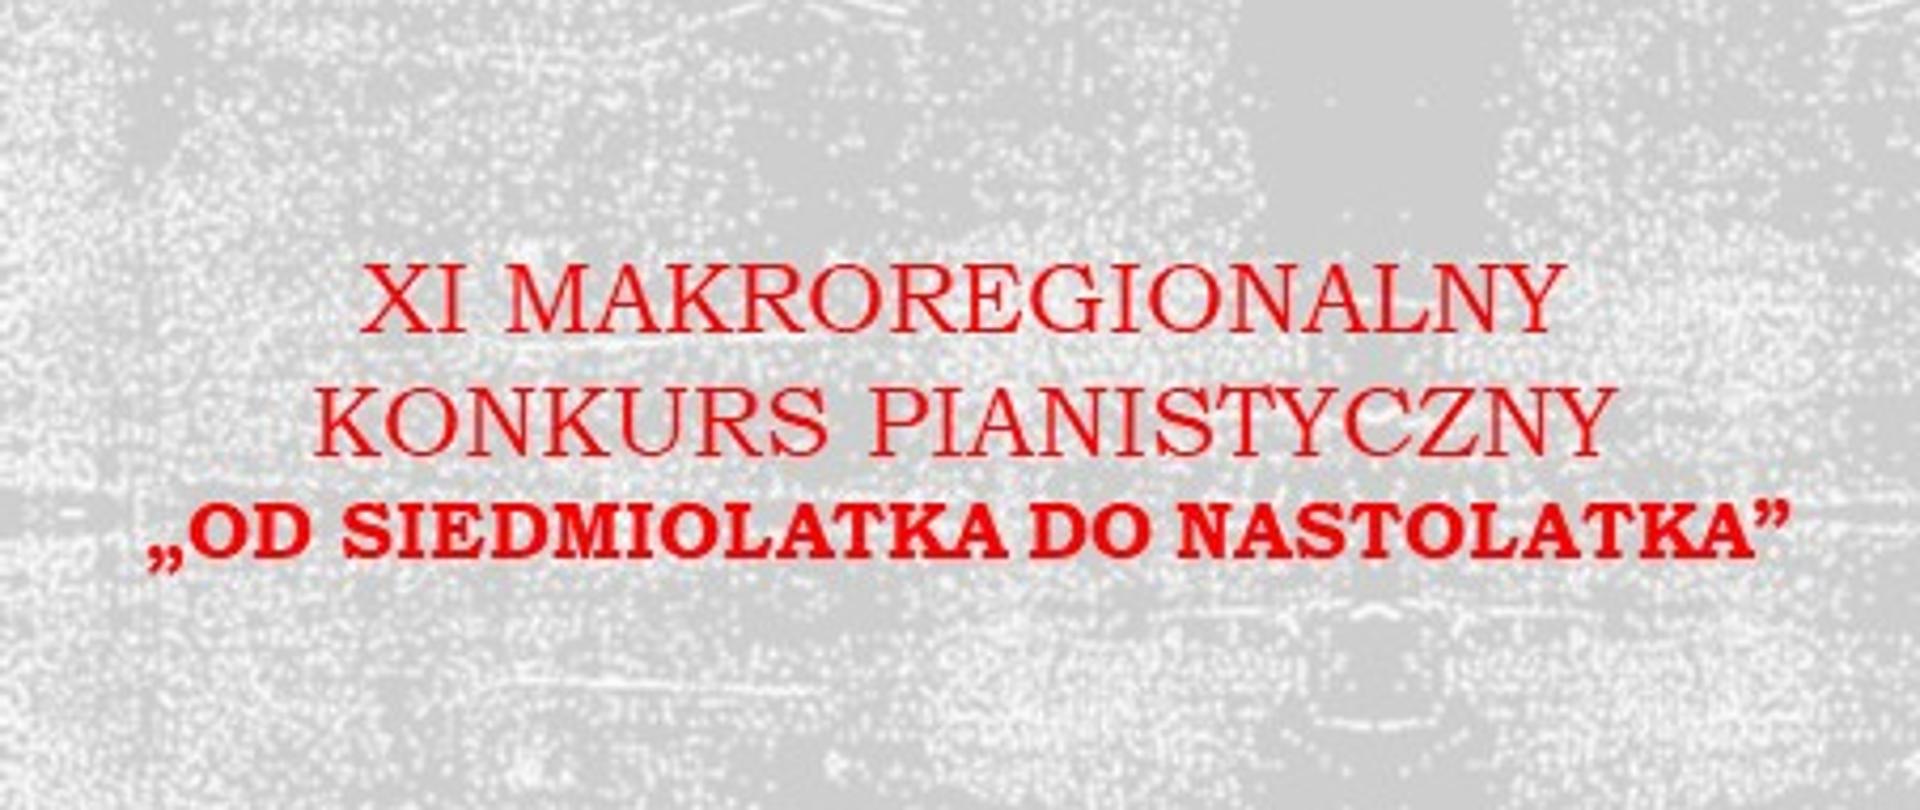 Na marmurkowym szarym tle umieszczono czerwonym napisem nazwę konkursu XI makroregionalny Konkurs Pianistyczny "Od siedmiolatka do nastolatka"